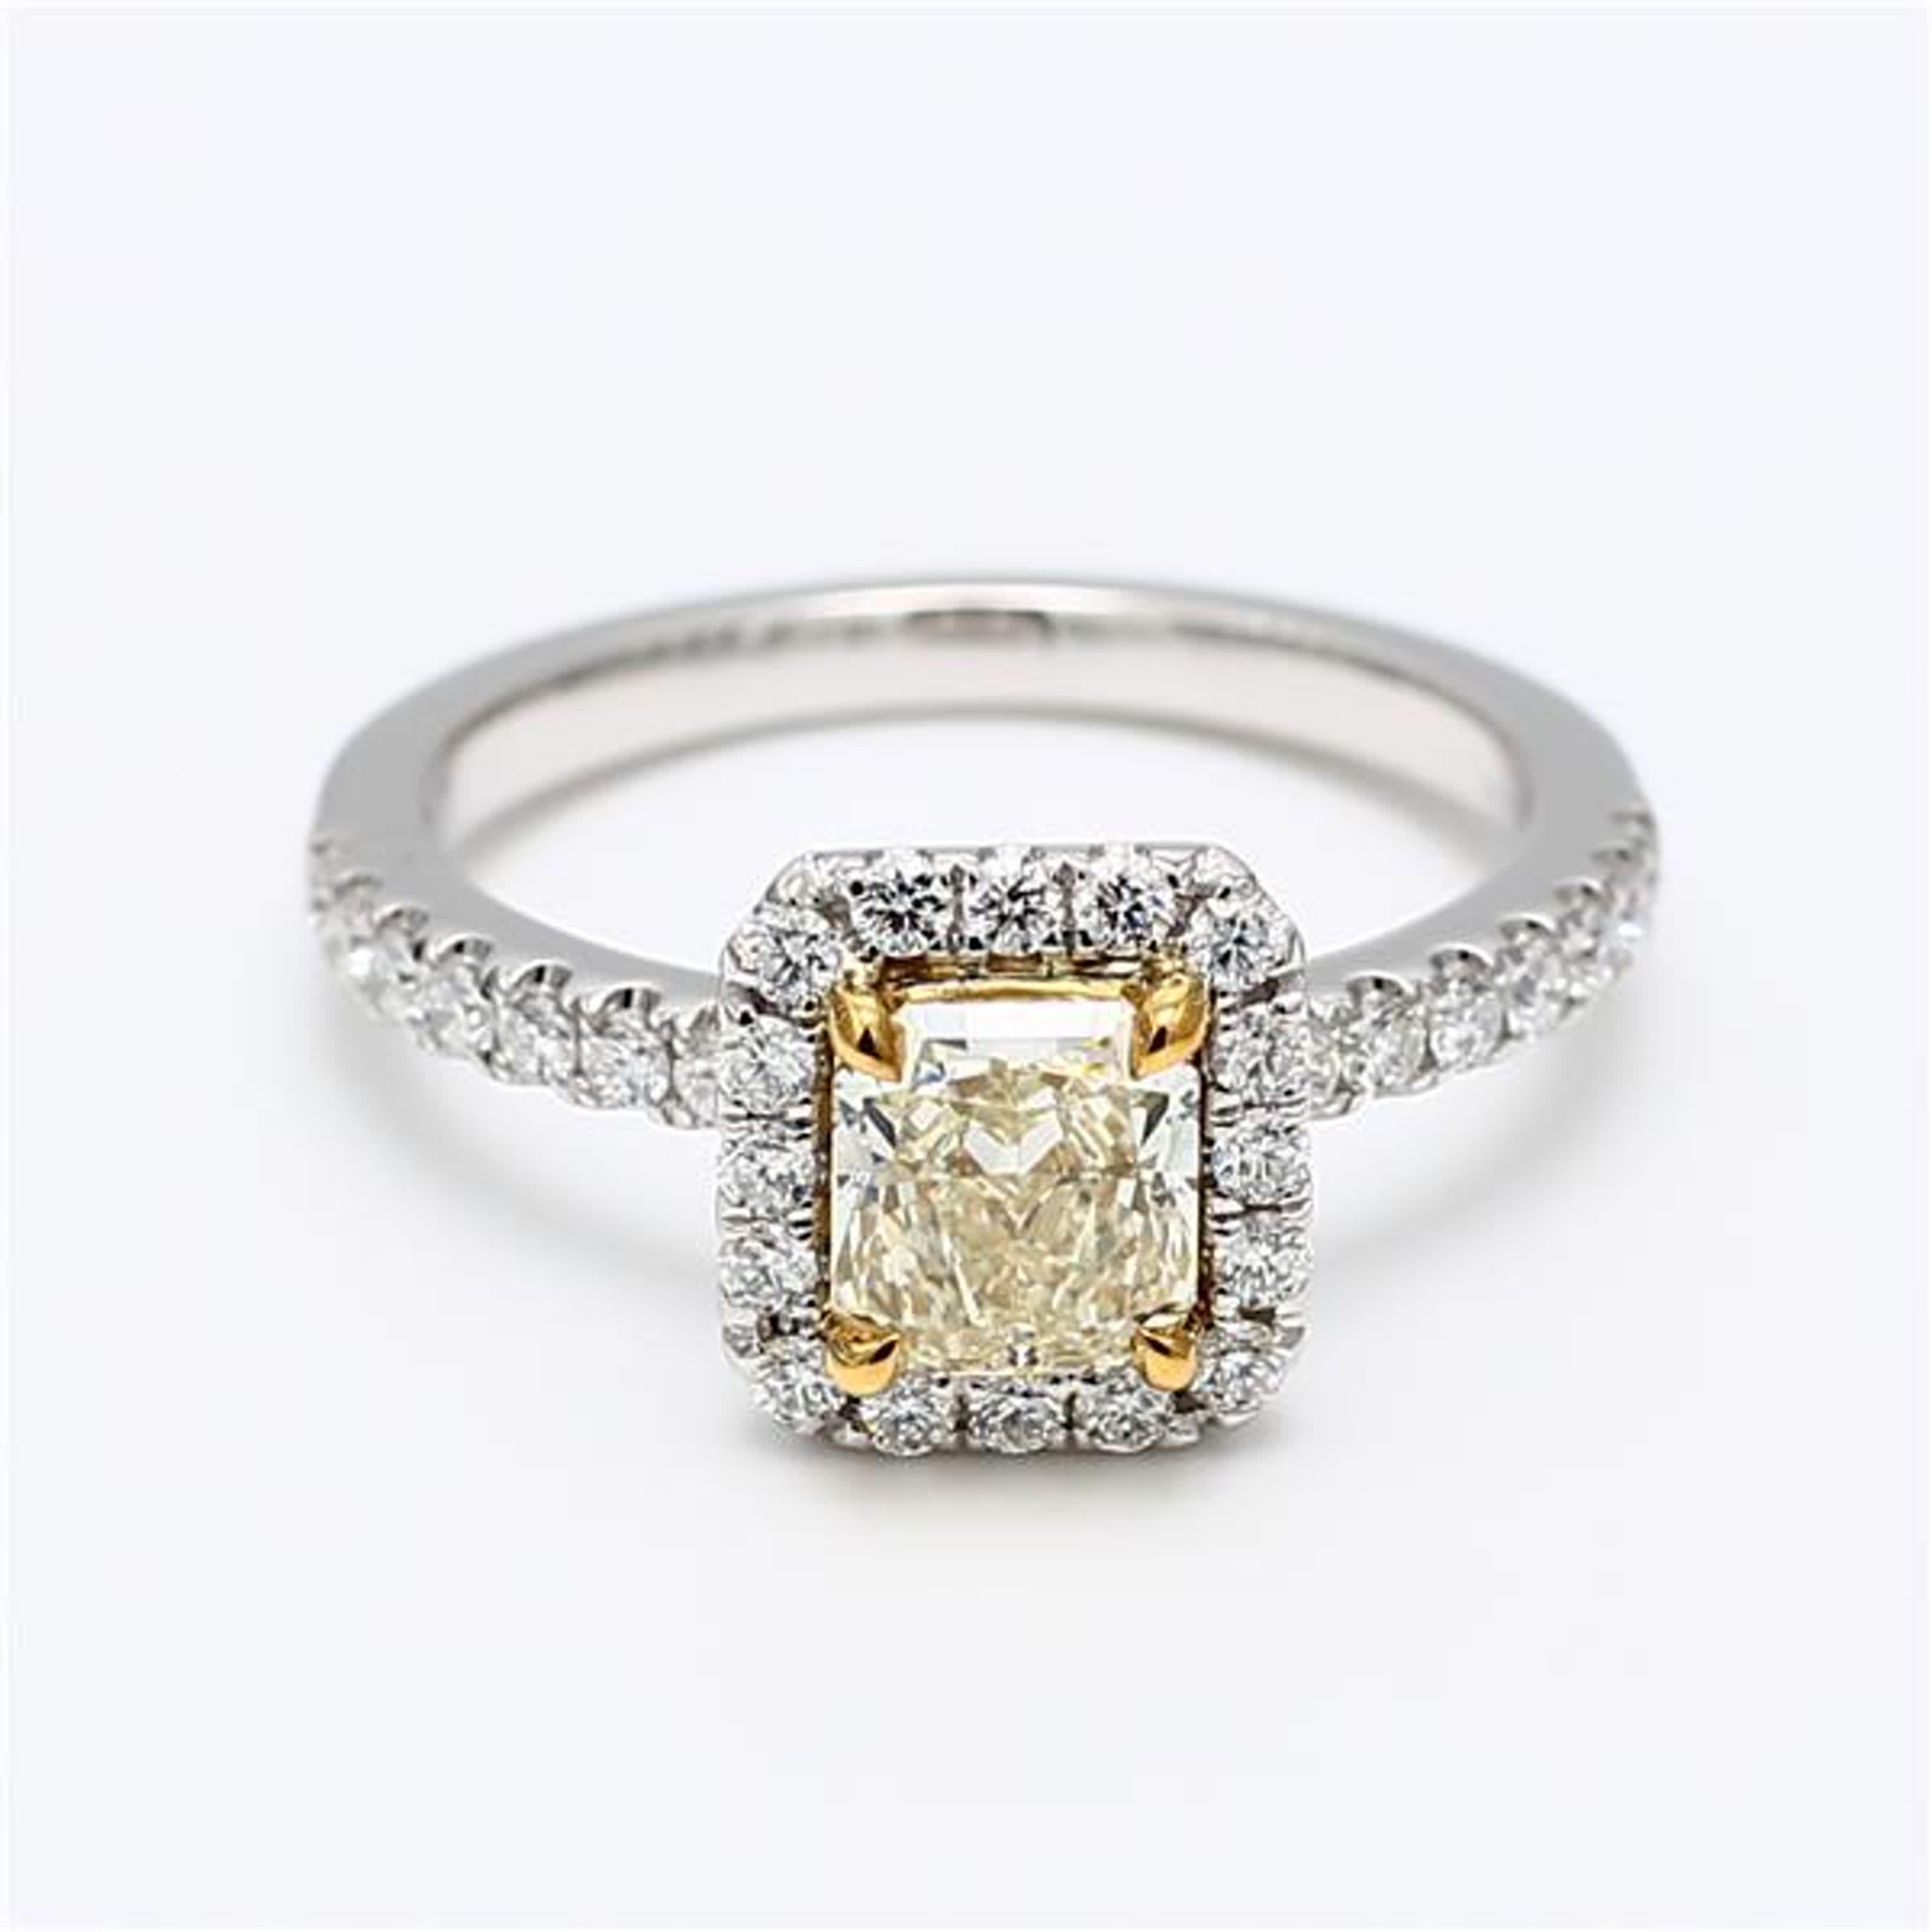 La bague classique en diamant certifiée GIA de Raregemworld. Monté dans une belle monture en or 18 carats et platine avec un diamant jaune naturel de taille radieuse. Le diamant jaune est entouré d'une mêlée de diamants blancs ronds naturels. Cette